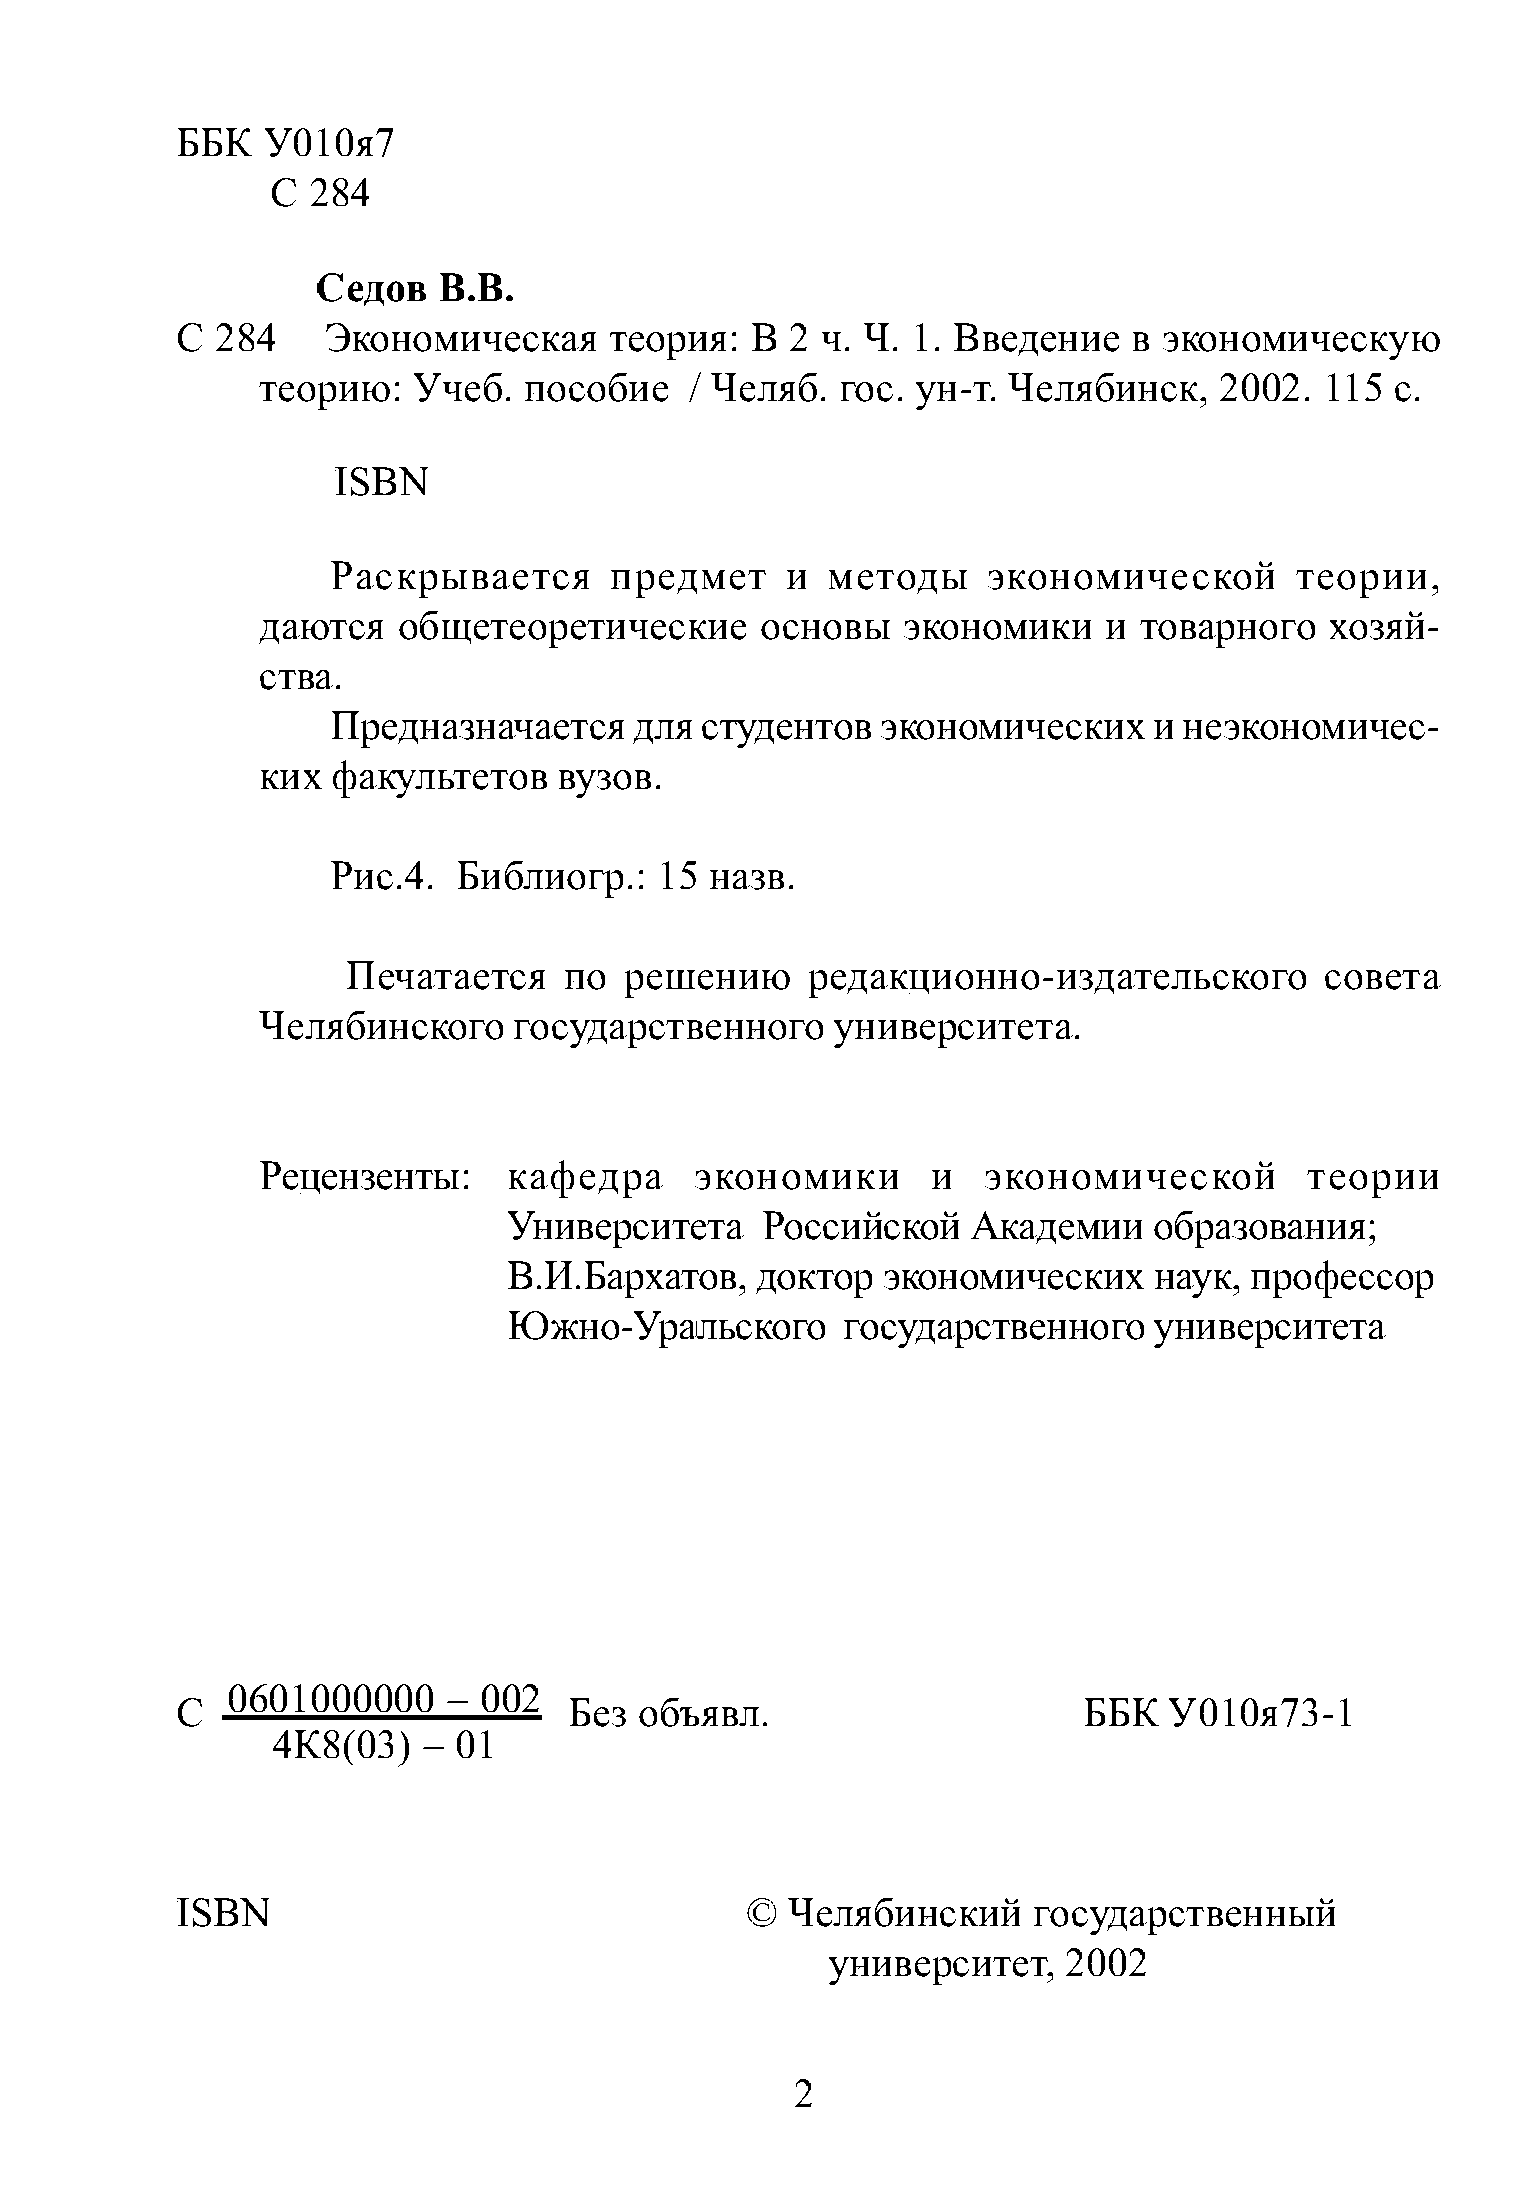 Челябинского государственного университета.
